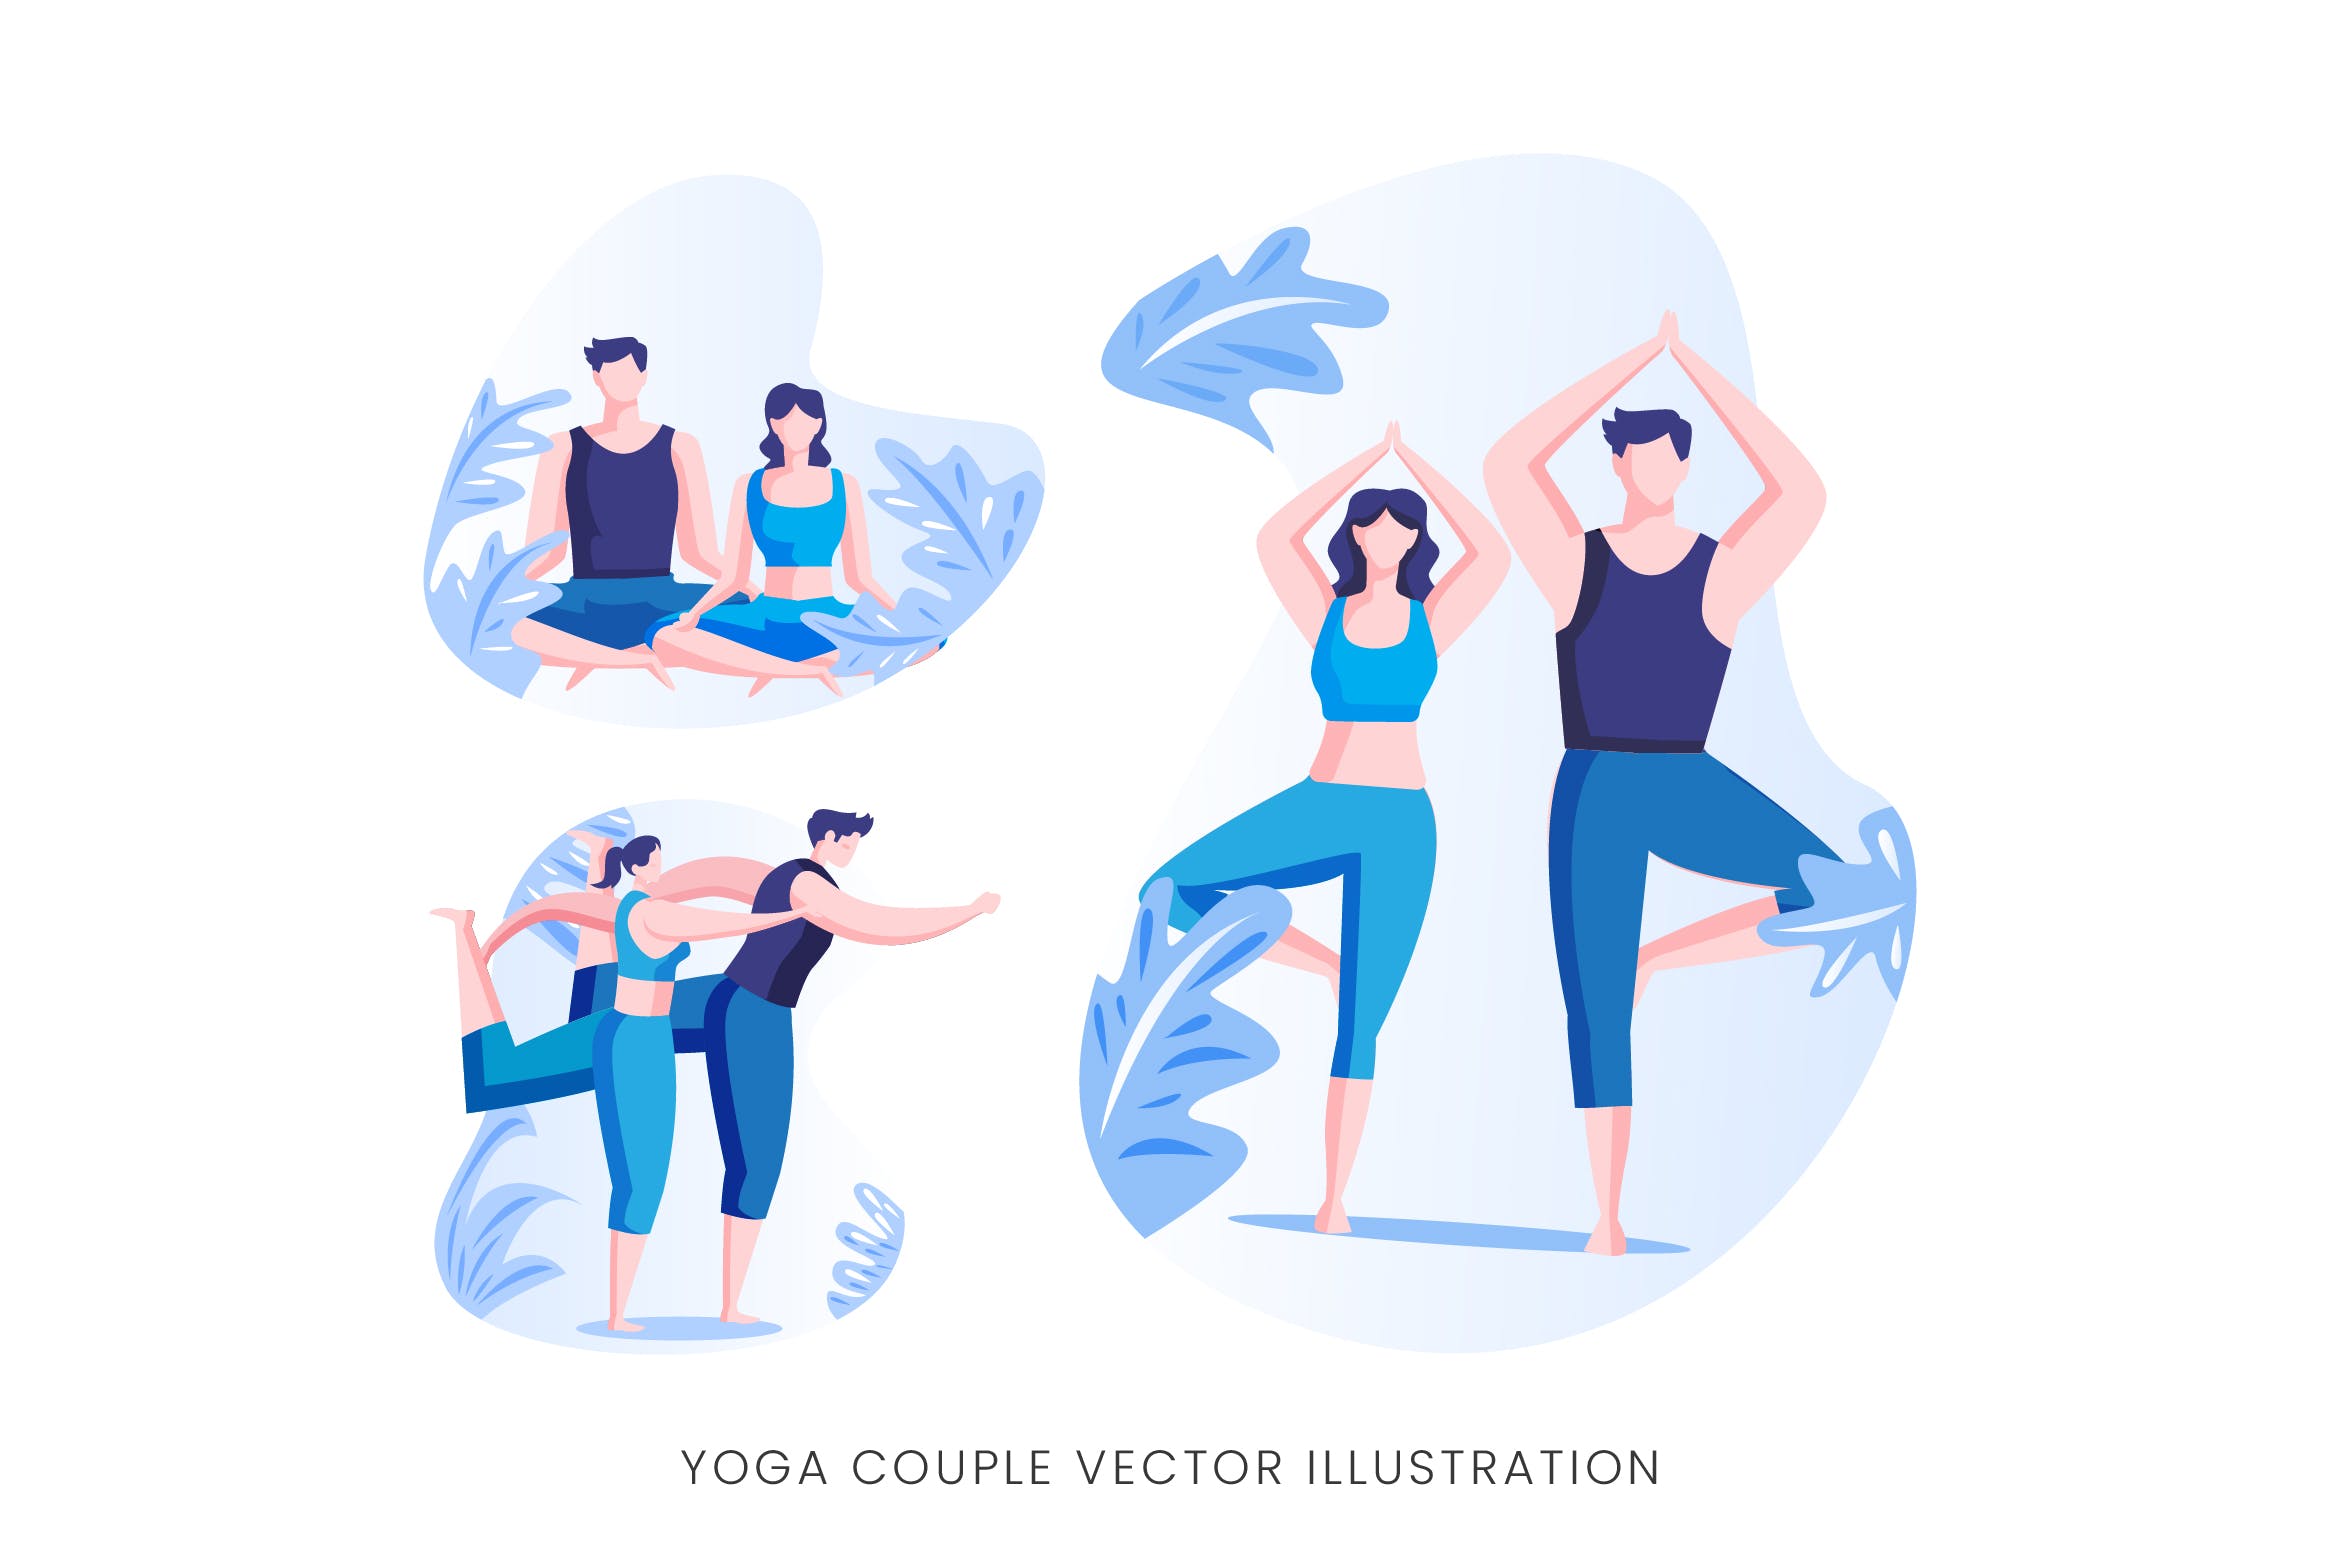 瑜珈情侣人物形象矢量手绘素材库精选设计素材 Yoga Couple Vector Character Set插图